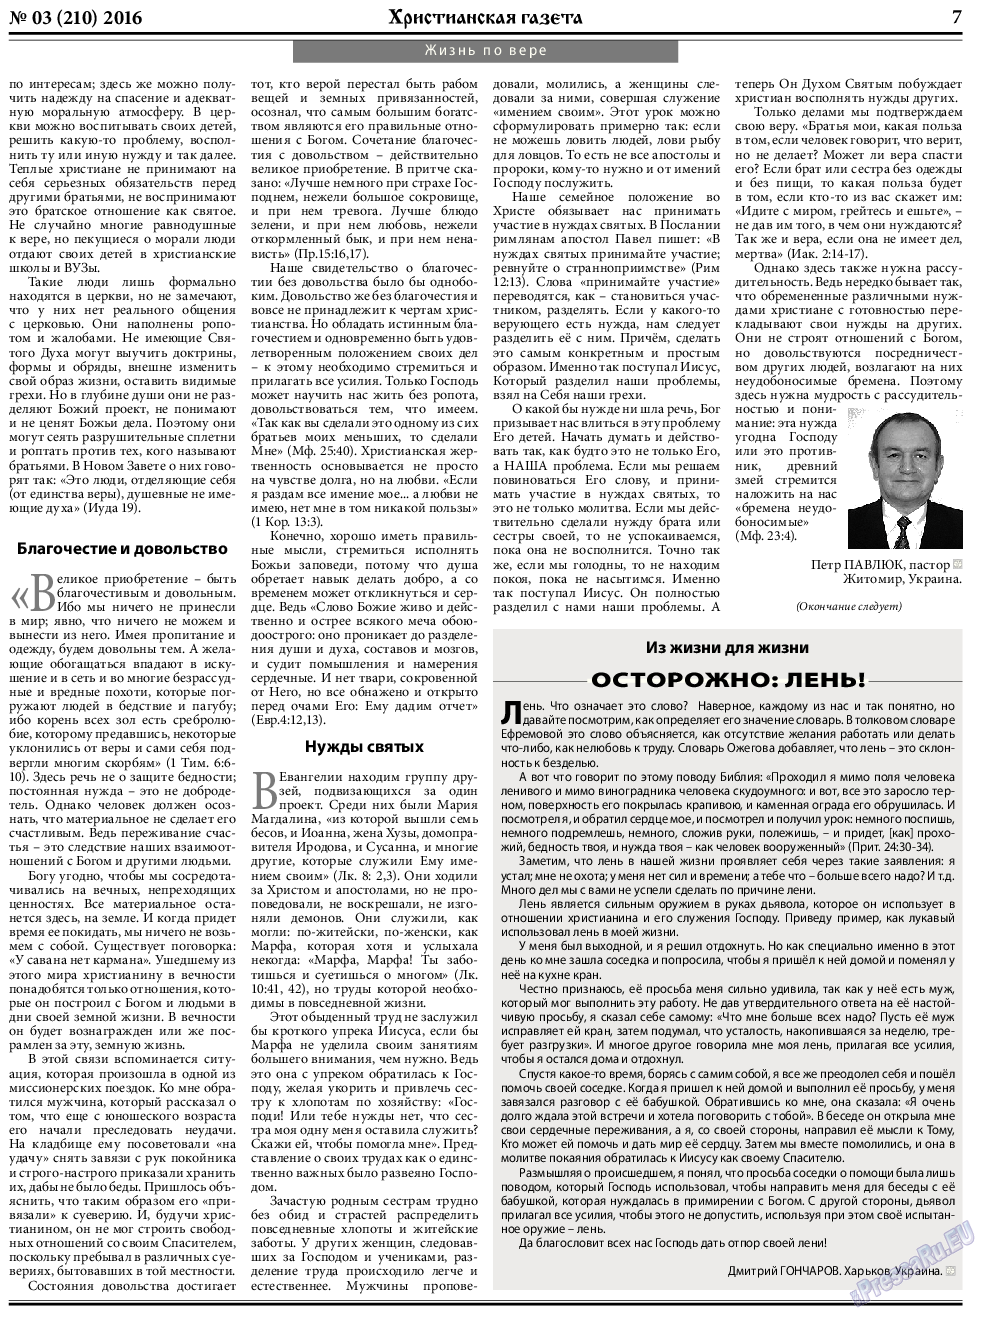 Христианская газета, газета. 2016 №3 стр.7